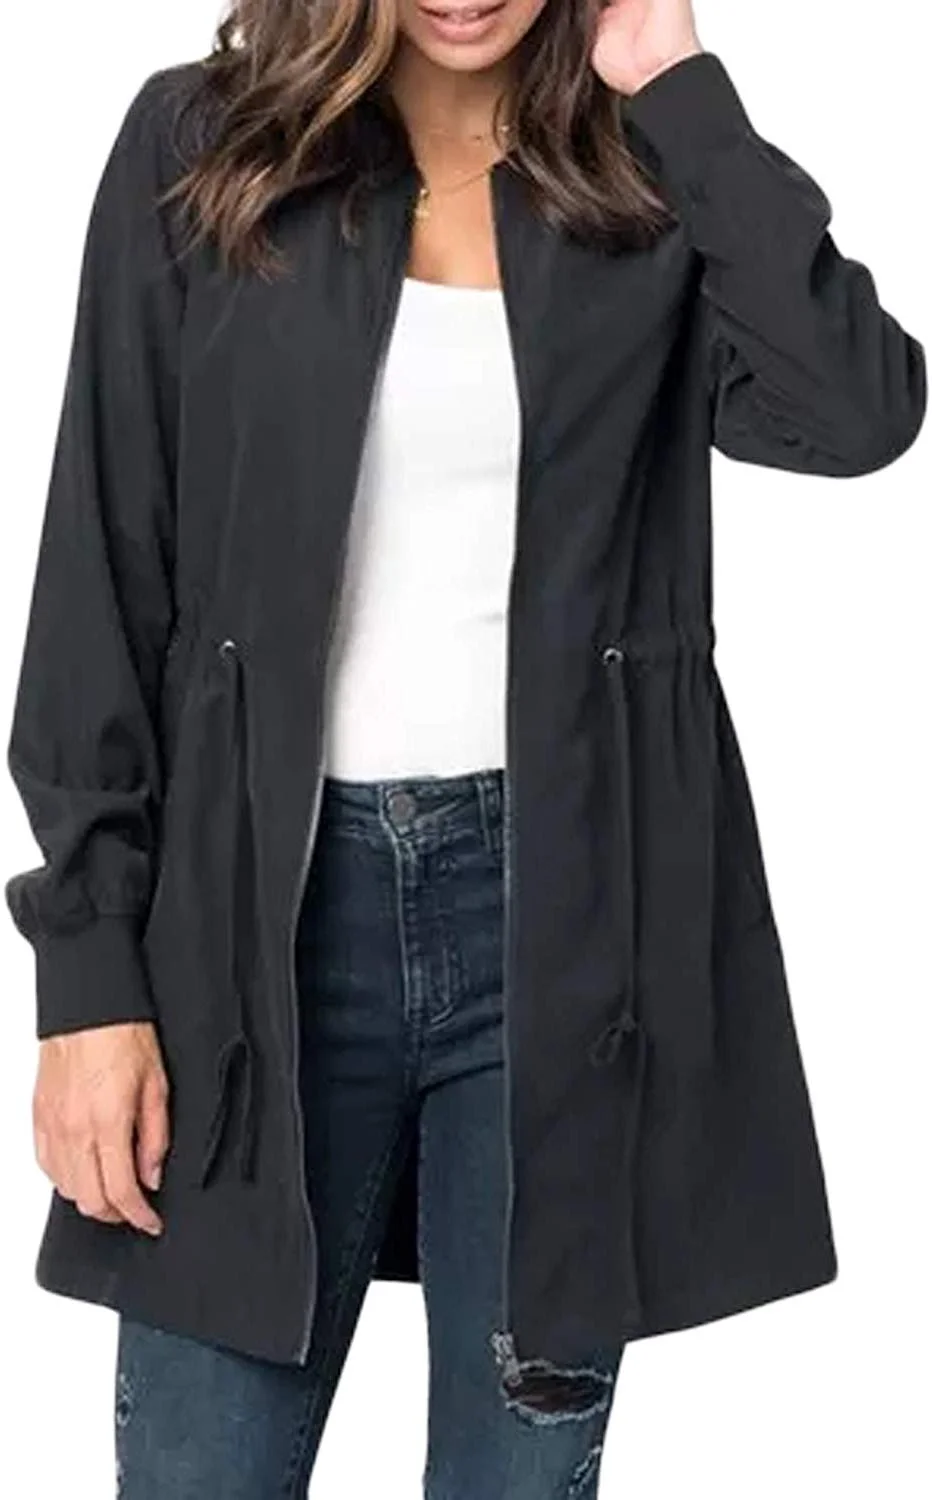 BLENCOT Womens Casual Lightweight Zip Up Suede Jackets Dust Coat Outerwear Windbreaker